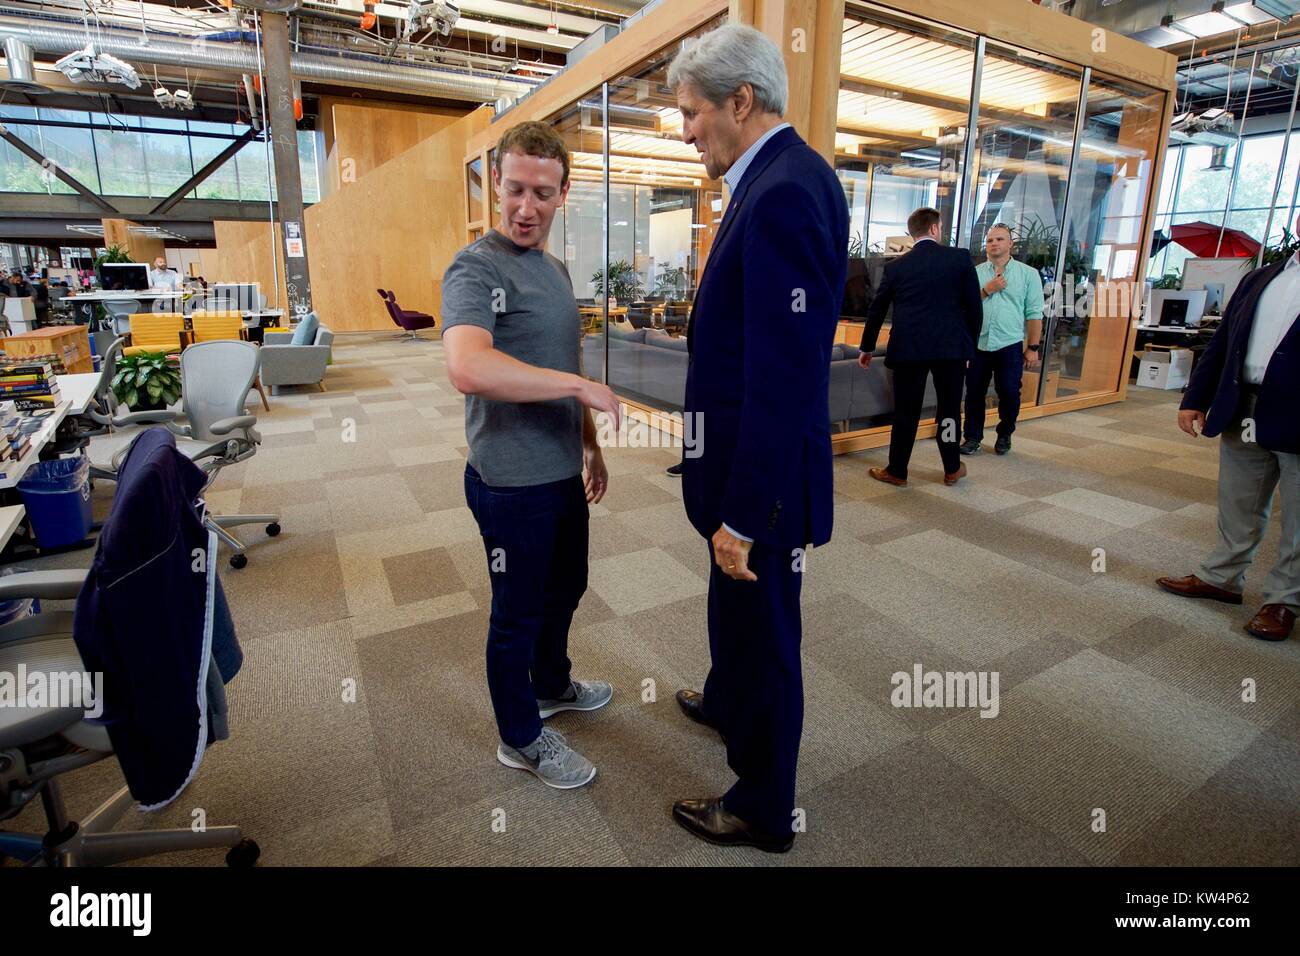 Il Segretario di Stato americano John Kerry che parla con il CEO di Facebook Mark Zuckerberg presso la sede centrale di Facebook, Menlo Park, California, 2016. Immagine cortesia Dipartimento di Stato degli Stati Uniti. Foto Stock